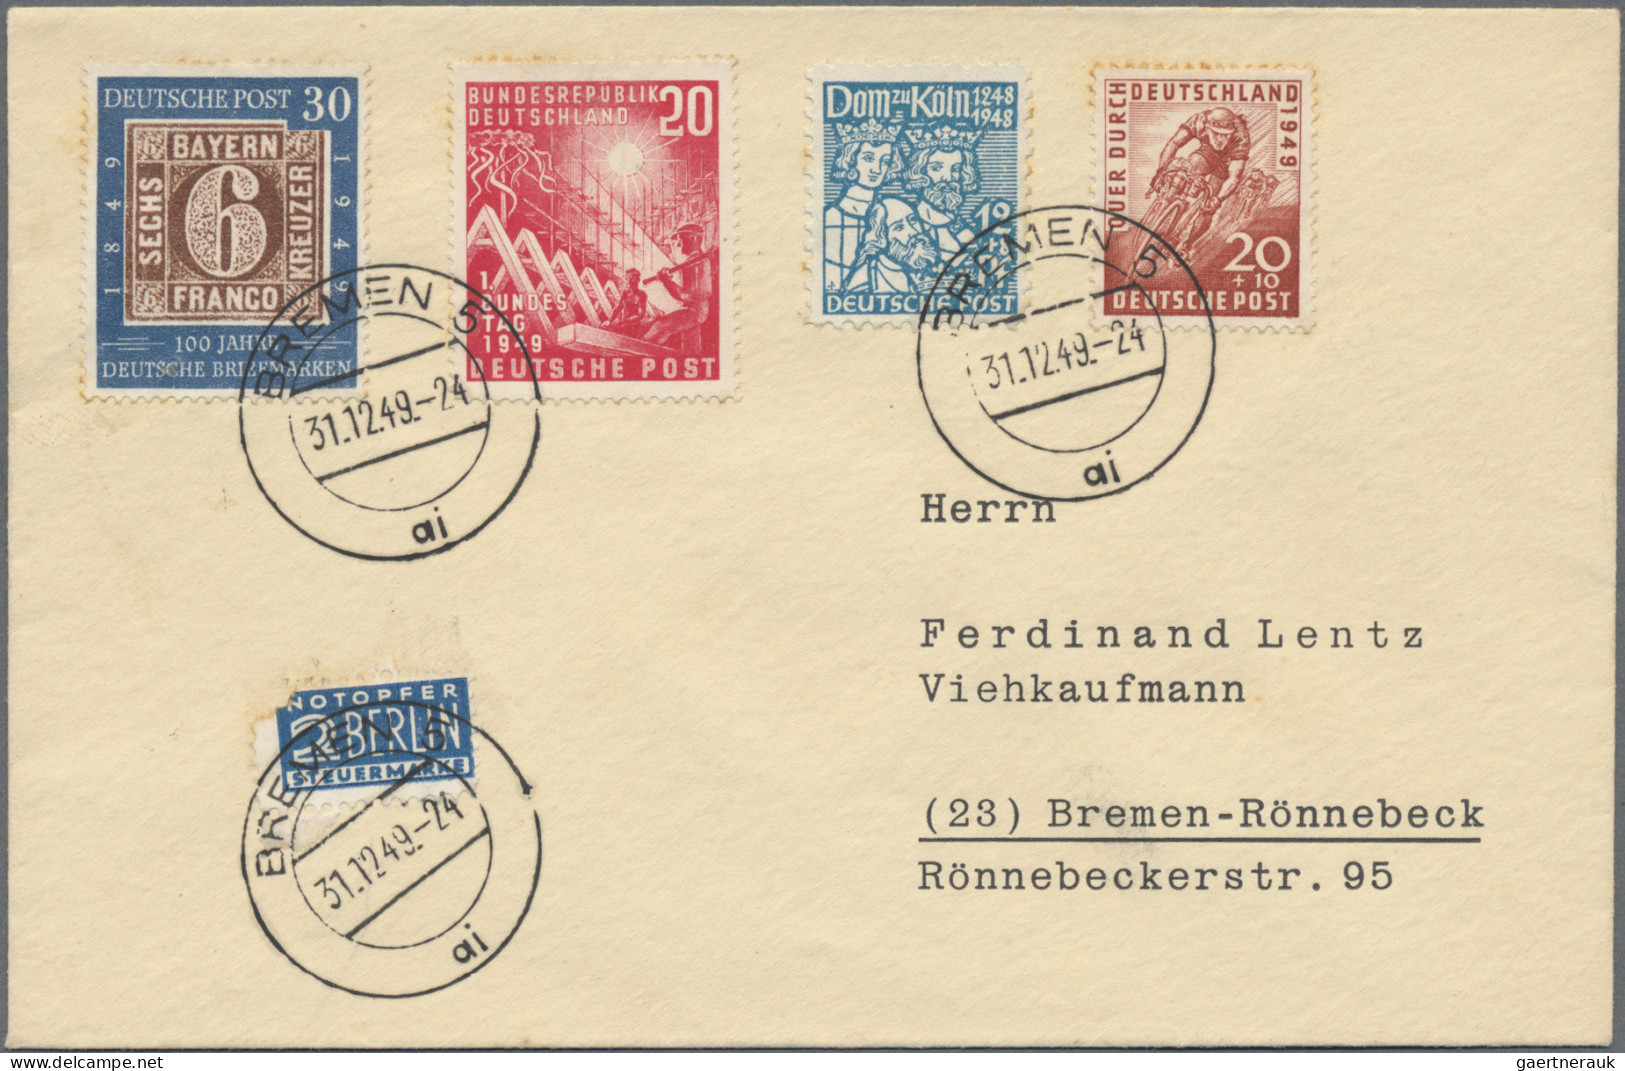 Bundesrepublik Deutschland: 1949/1955 (ca.), Alter Bestand von etwa 280 Belegen